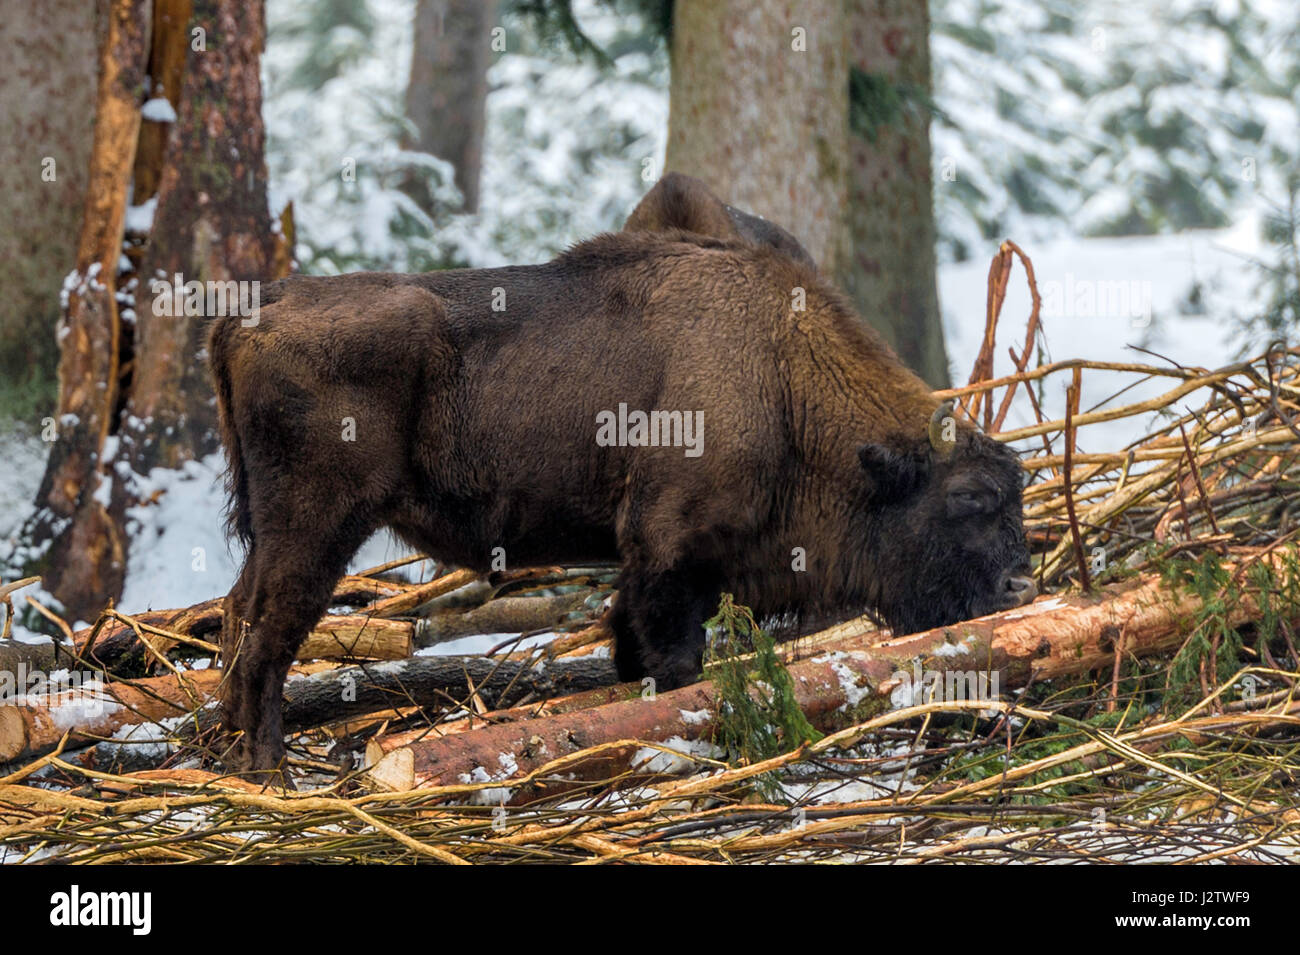 Singolo adulto europeo del legno (Bison Bison bonasus) illustrato nella coperta di neve bosco in pieno inverno. Foto Stock